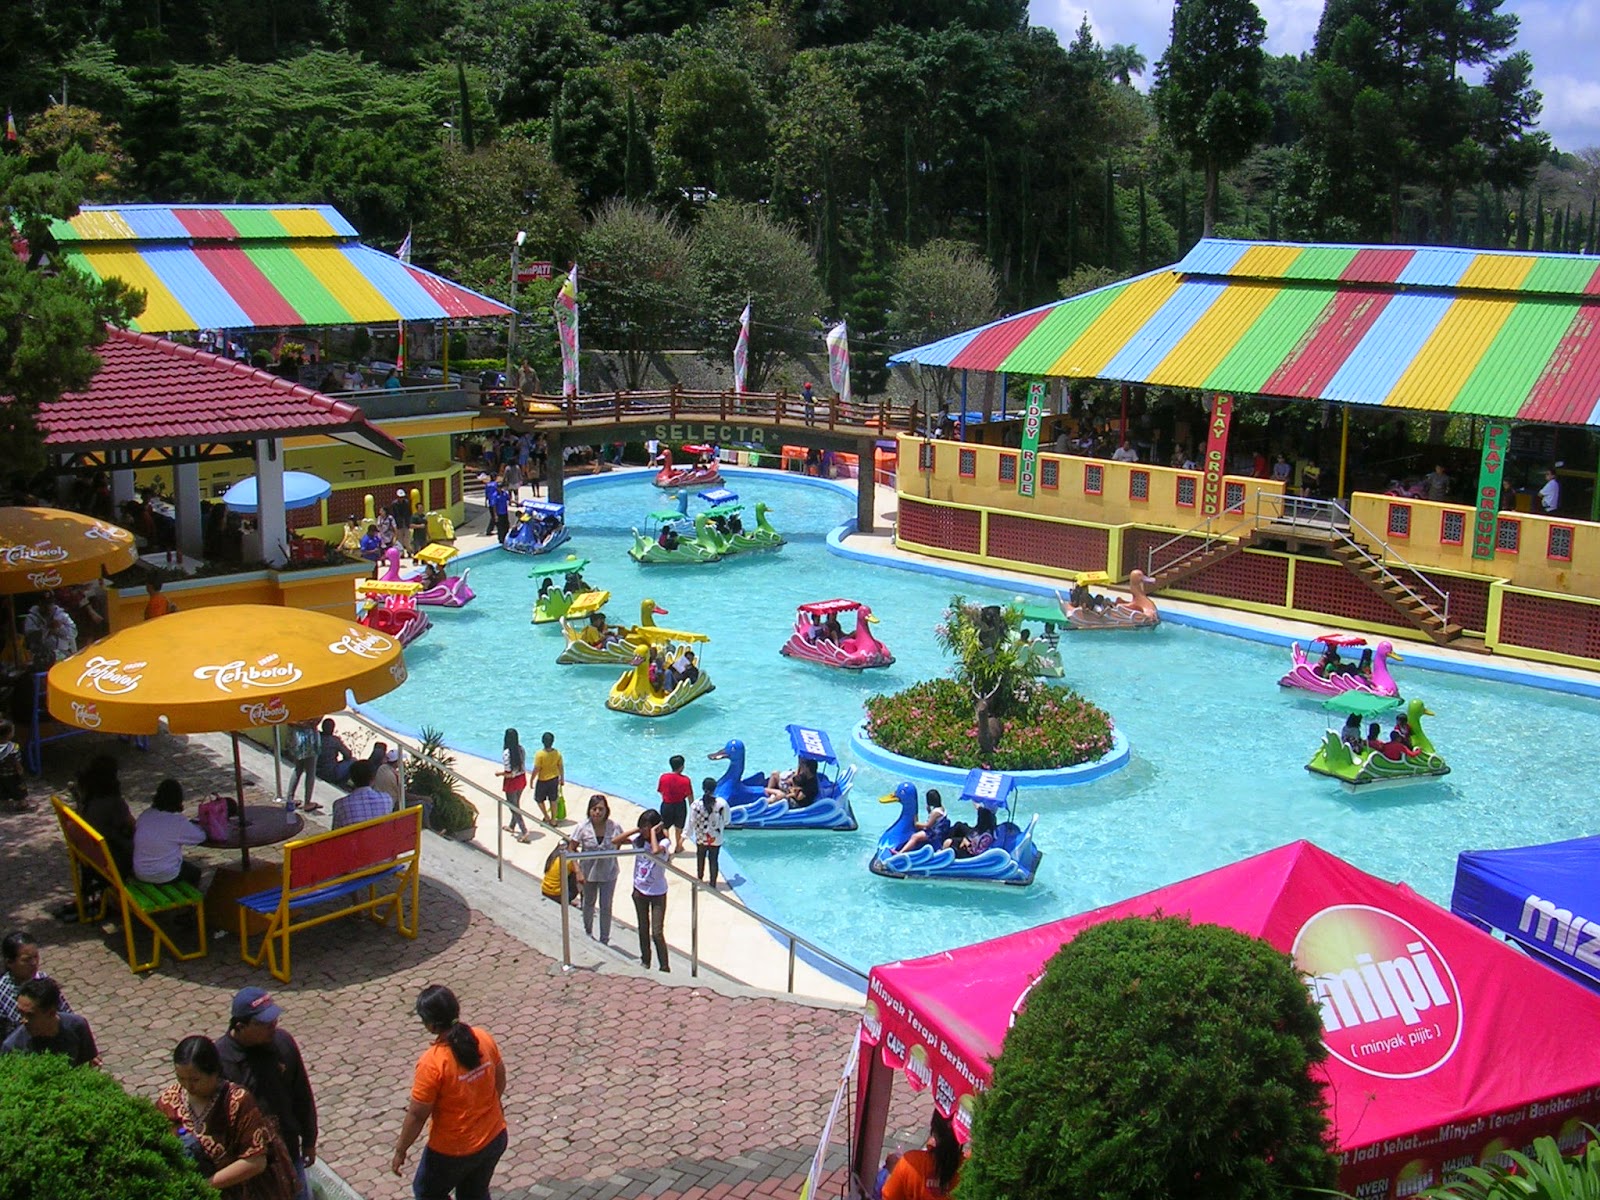  Tempat  Wisata  Paling Populer di  kota Malang  Deqwan1 Blog